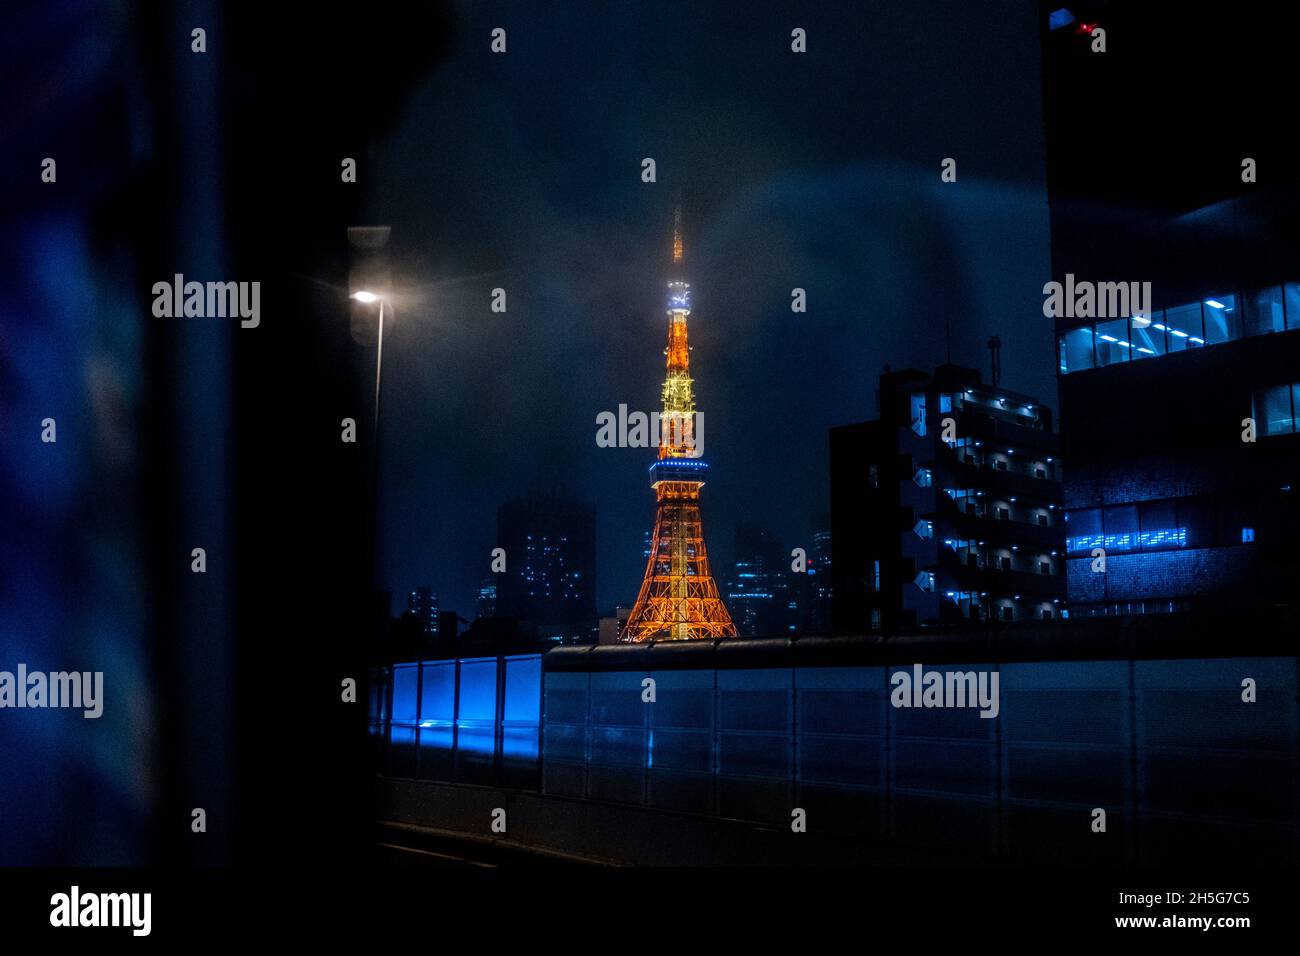 Tokio, 31.08.21: Leben in der Stadt, Aussicht auf den Tokyo Tower mit den HochhŠusern im Dunst der Abendstimmung. Foto Stock